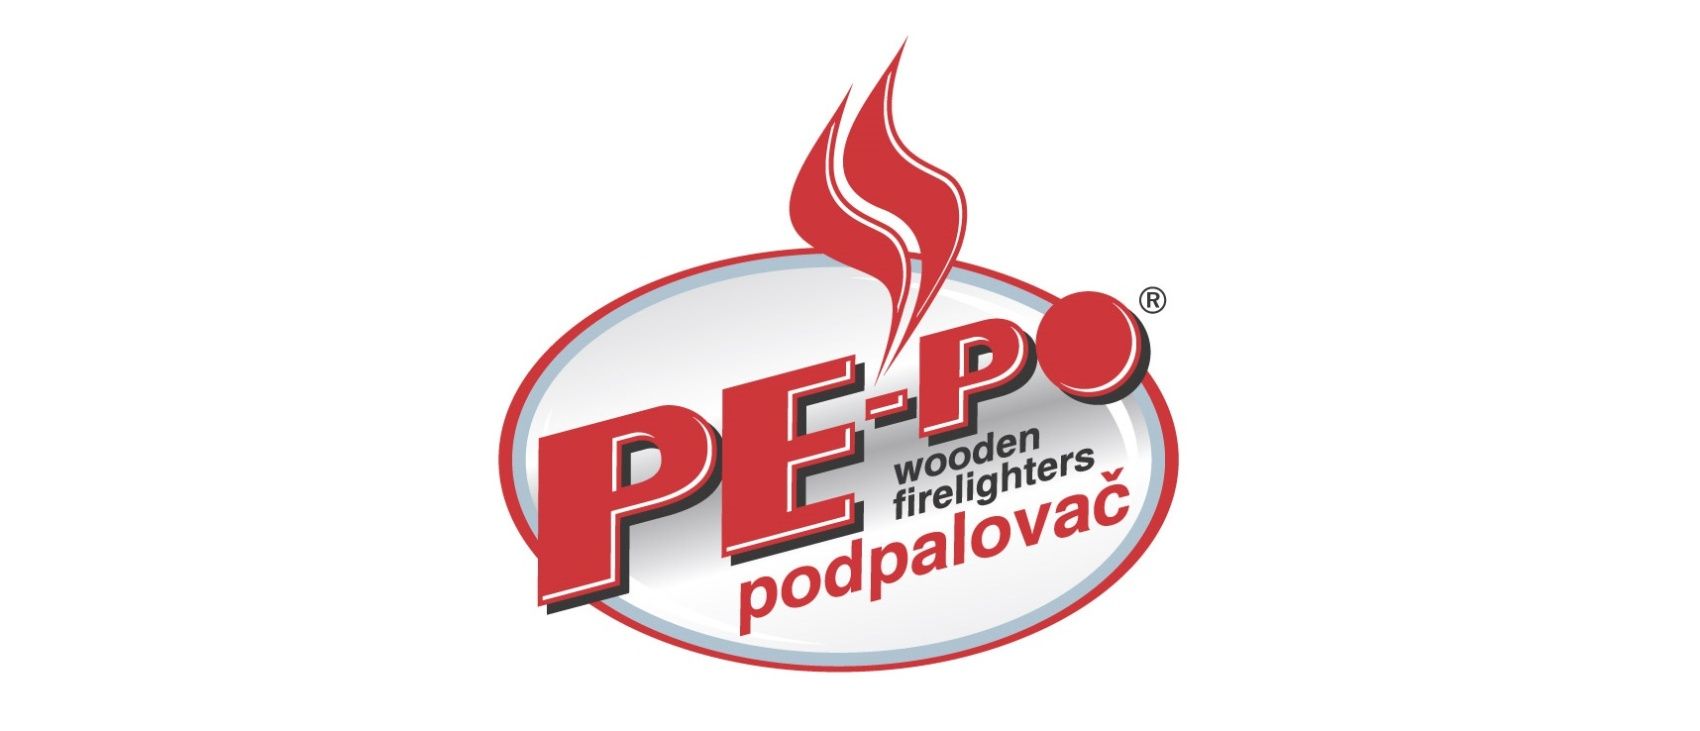 Reference PE-PO podpalovače, 2016